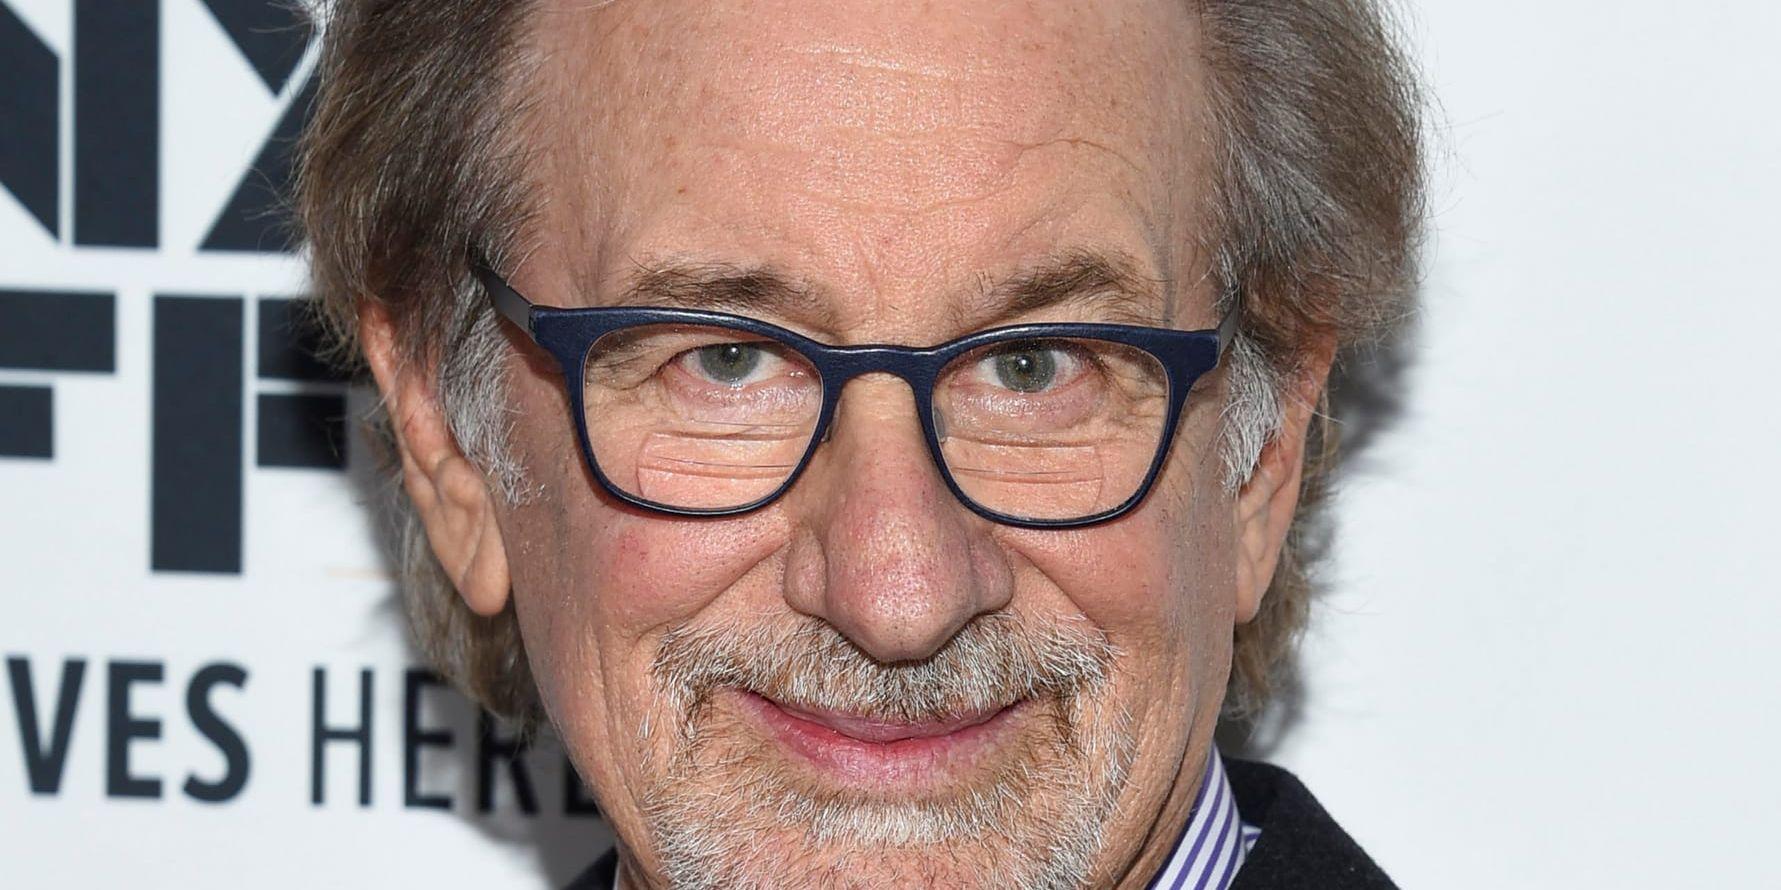 Steven Spielberg ska göra en ny version av "West side story". Arkivbild.